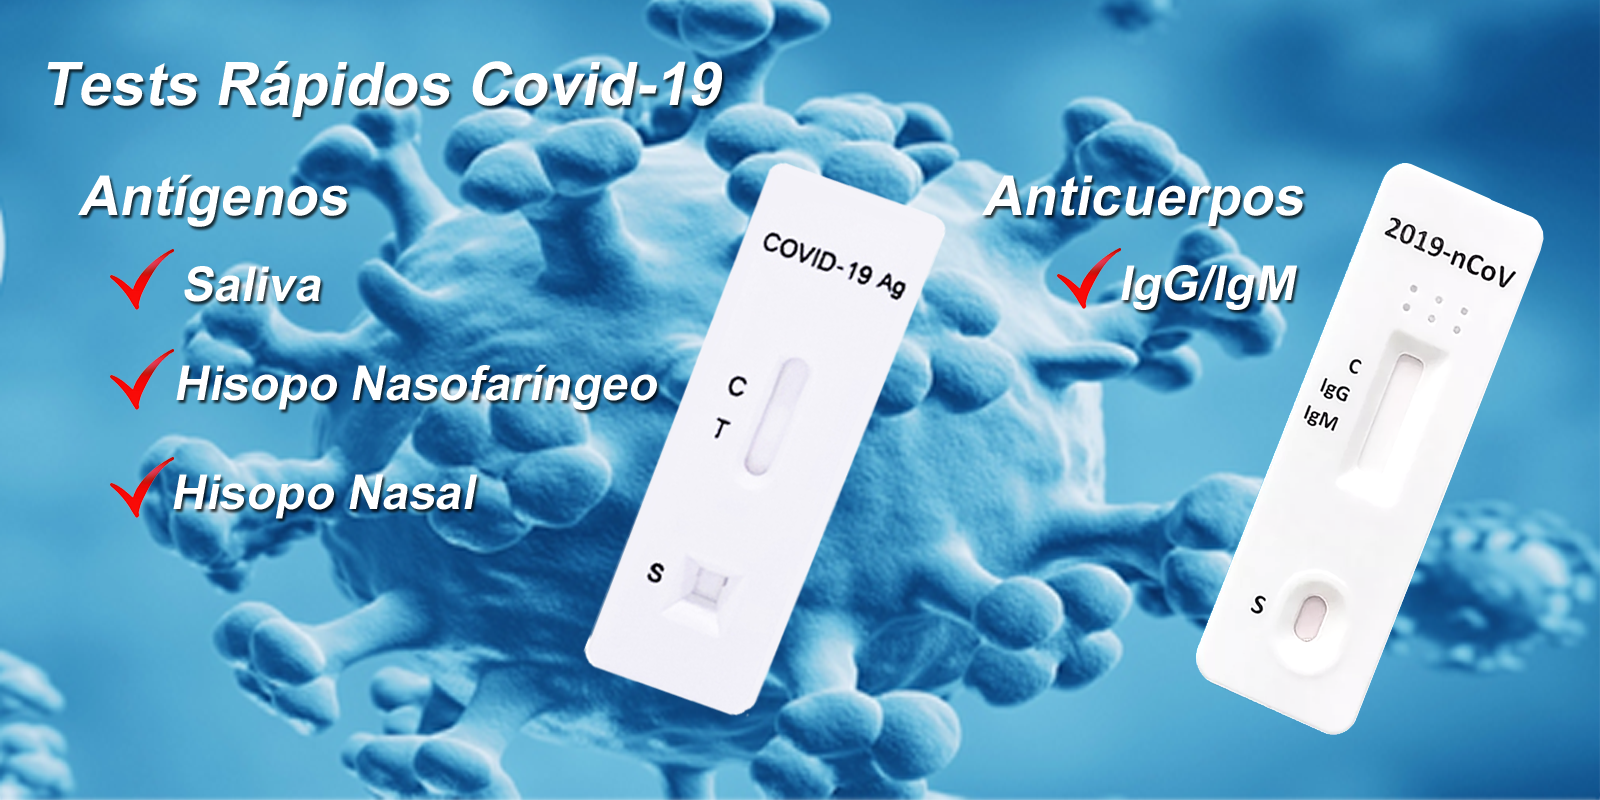 Tests para la detección rápida de antígenos SARS-CoV-2